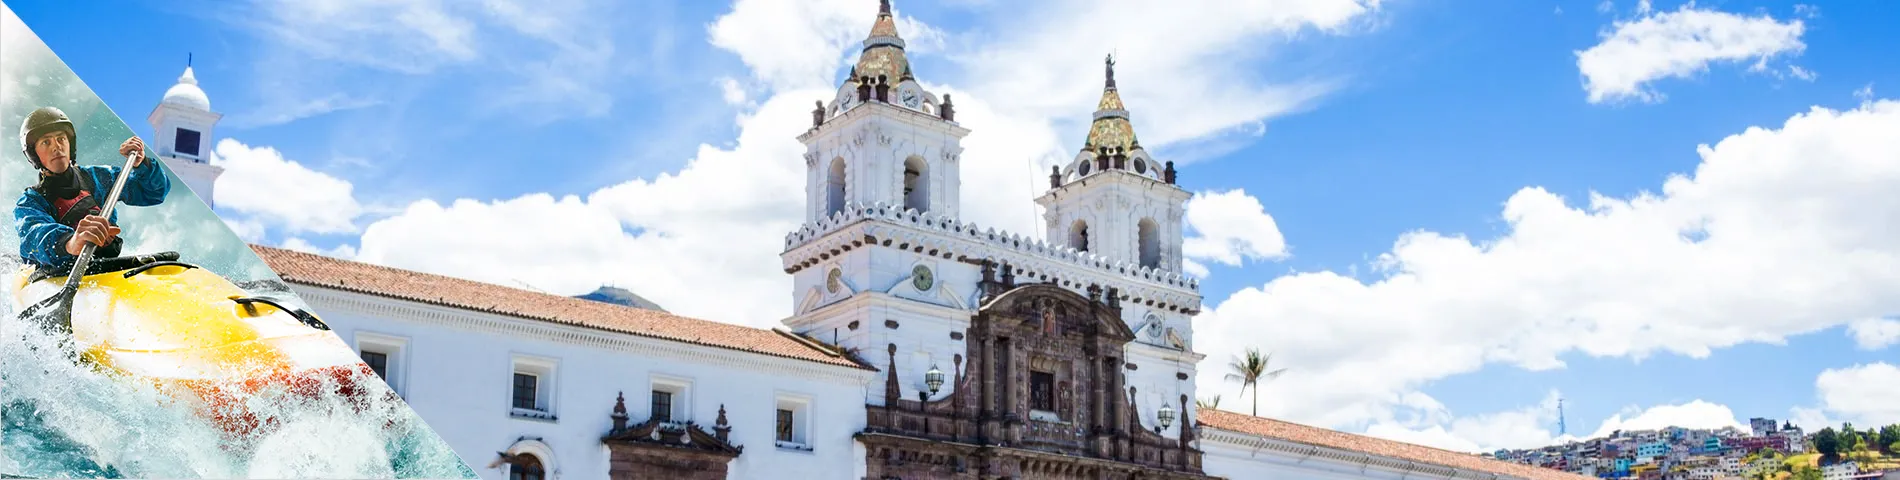 Quito - 